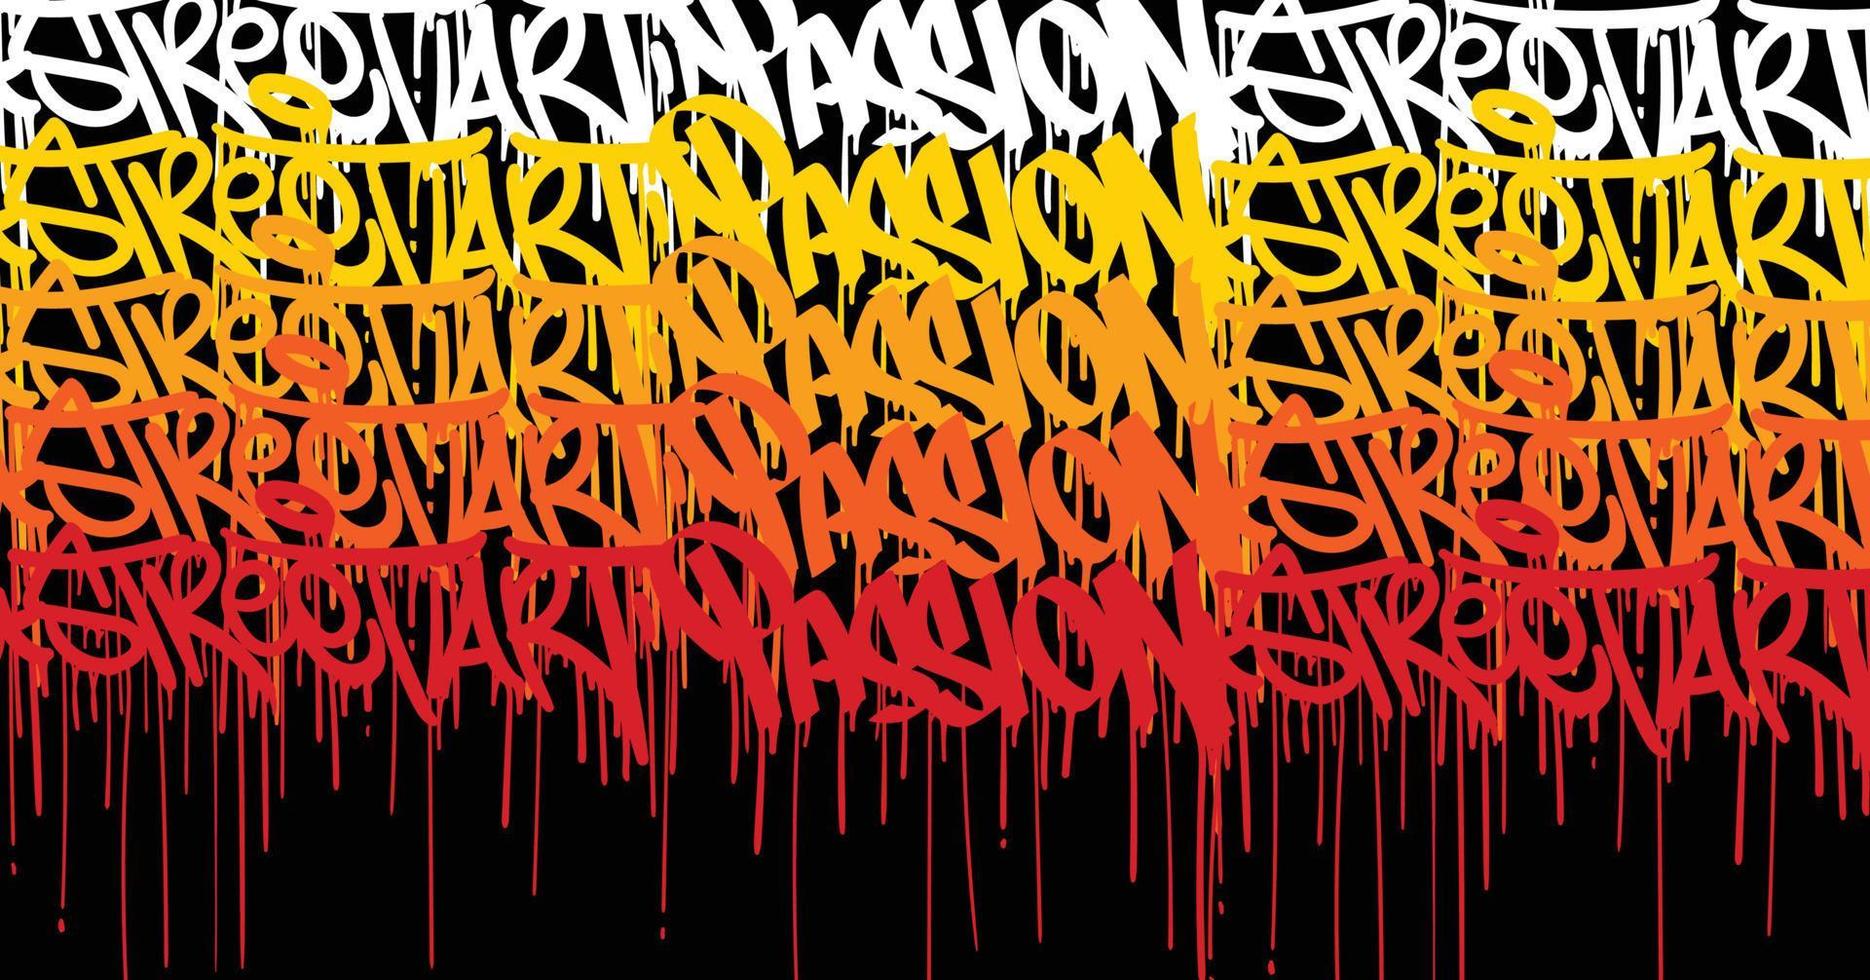 fondo de arte de graffiti con tirada de garabatos y estilo de etiquetado dibujado a mano. tema urbano de graffiti de arte callejero para impresiones, patrones, pancartas y textiles en formato vectorial vector